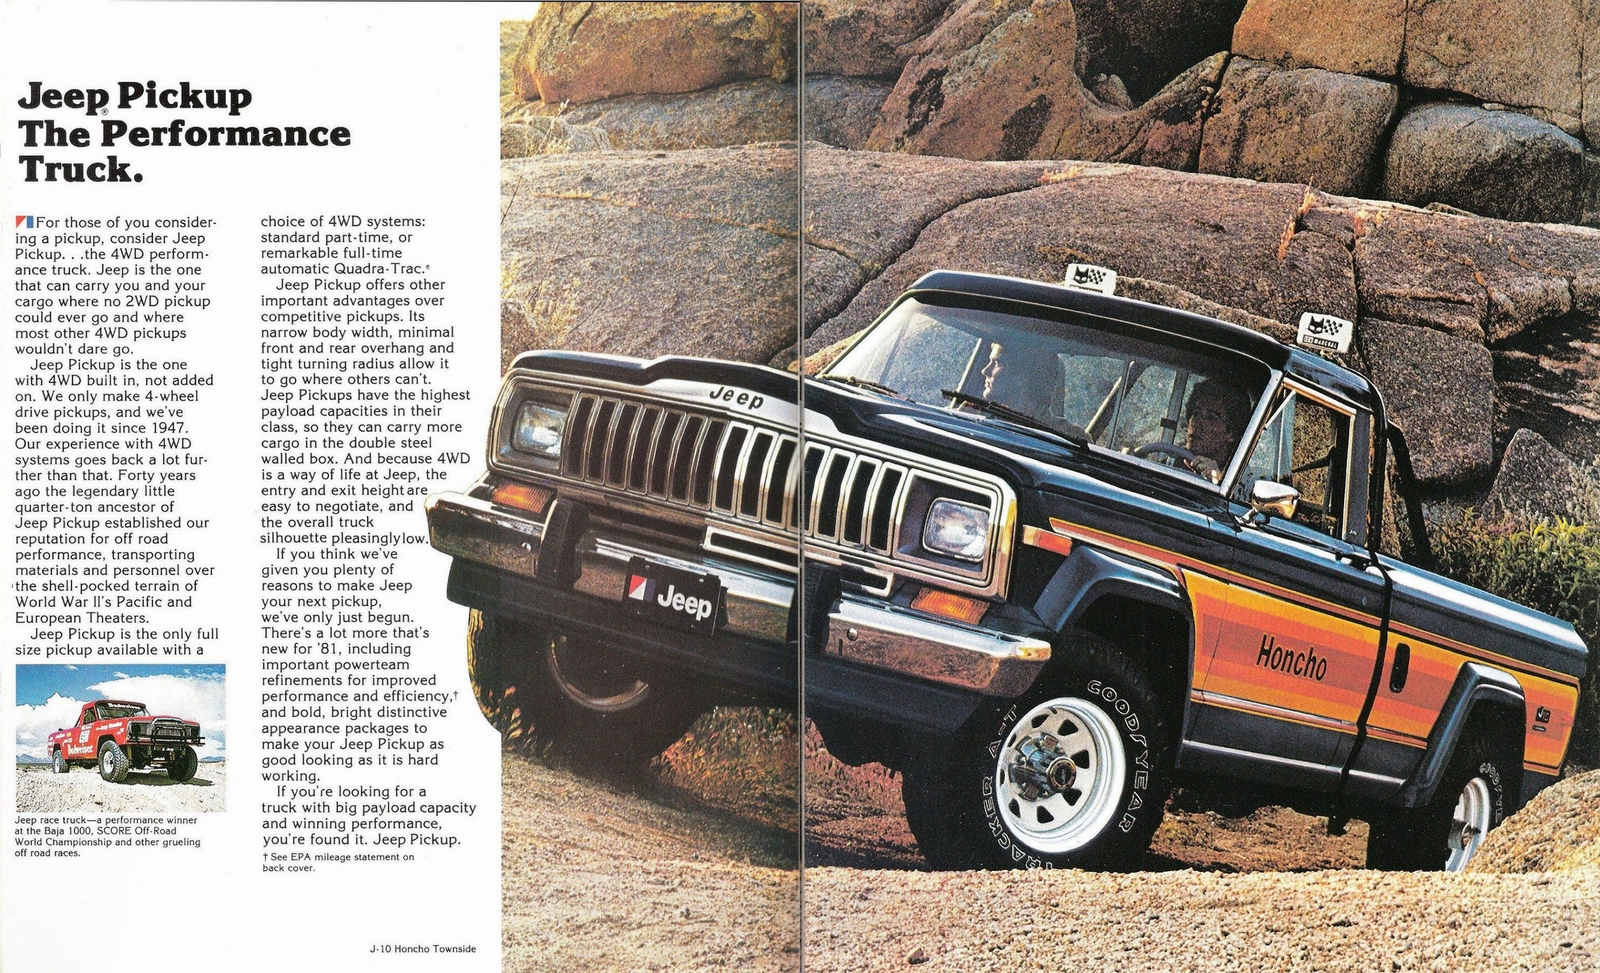 n_1981 Jeep Pickup-02-03.jpg